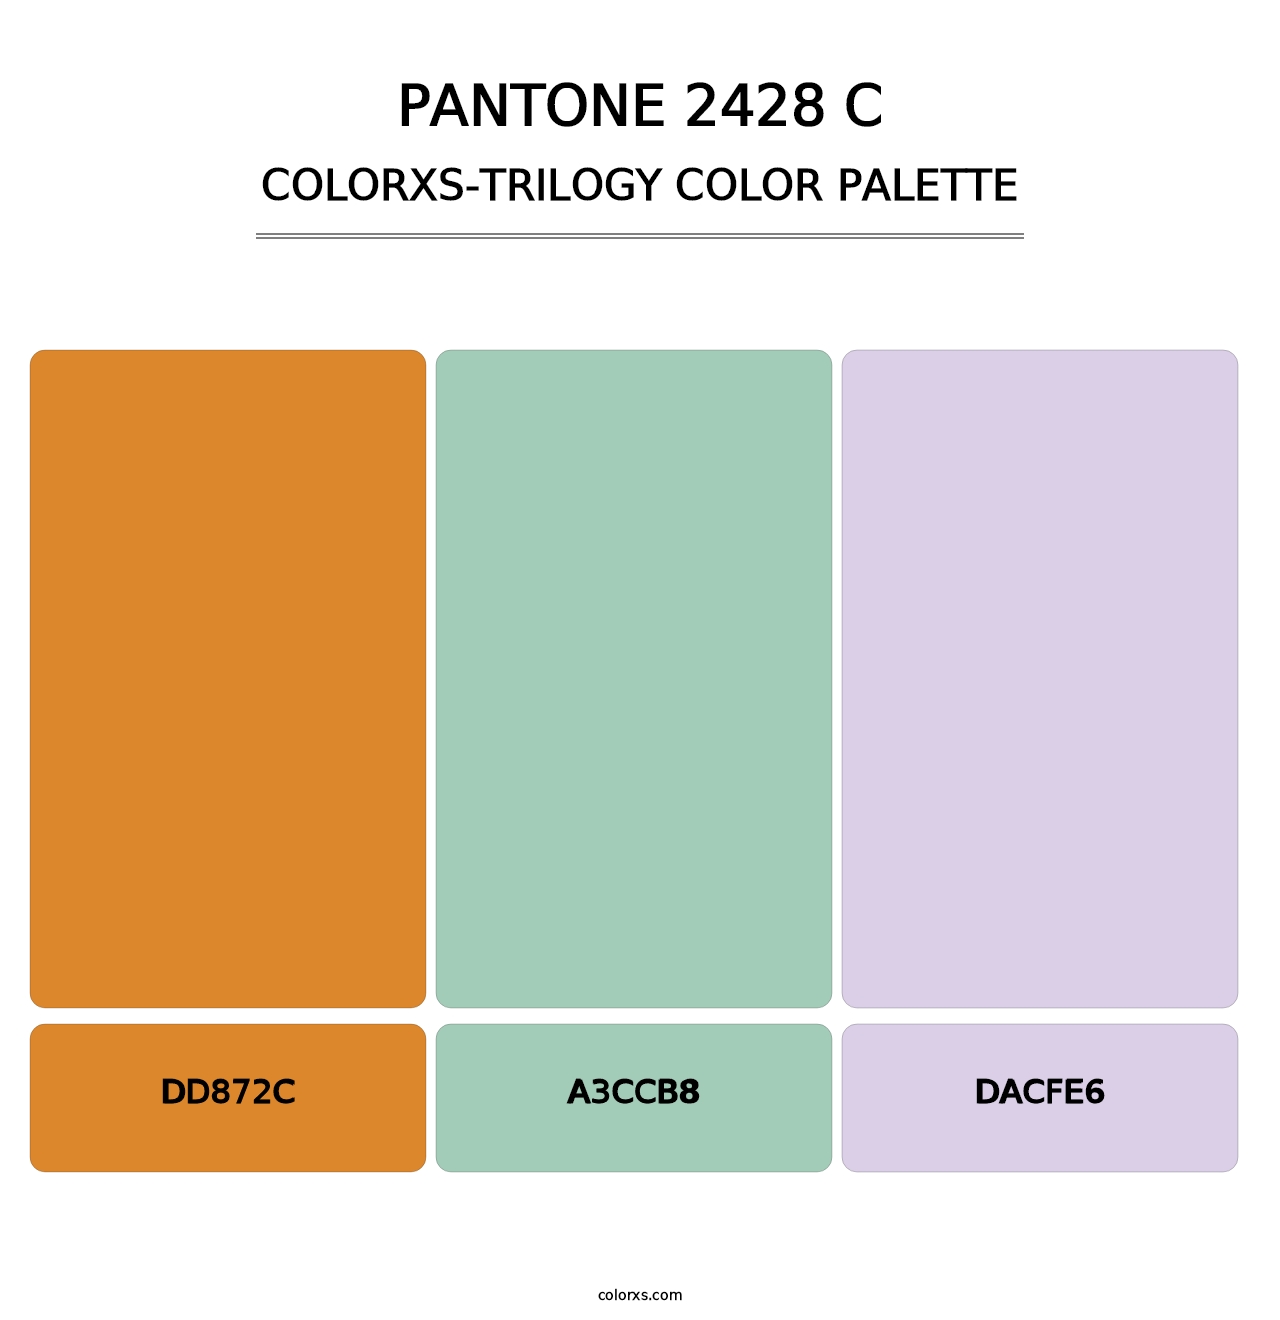 PANTONE 2428 C - Colorxs Trilogy Palette